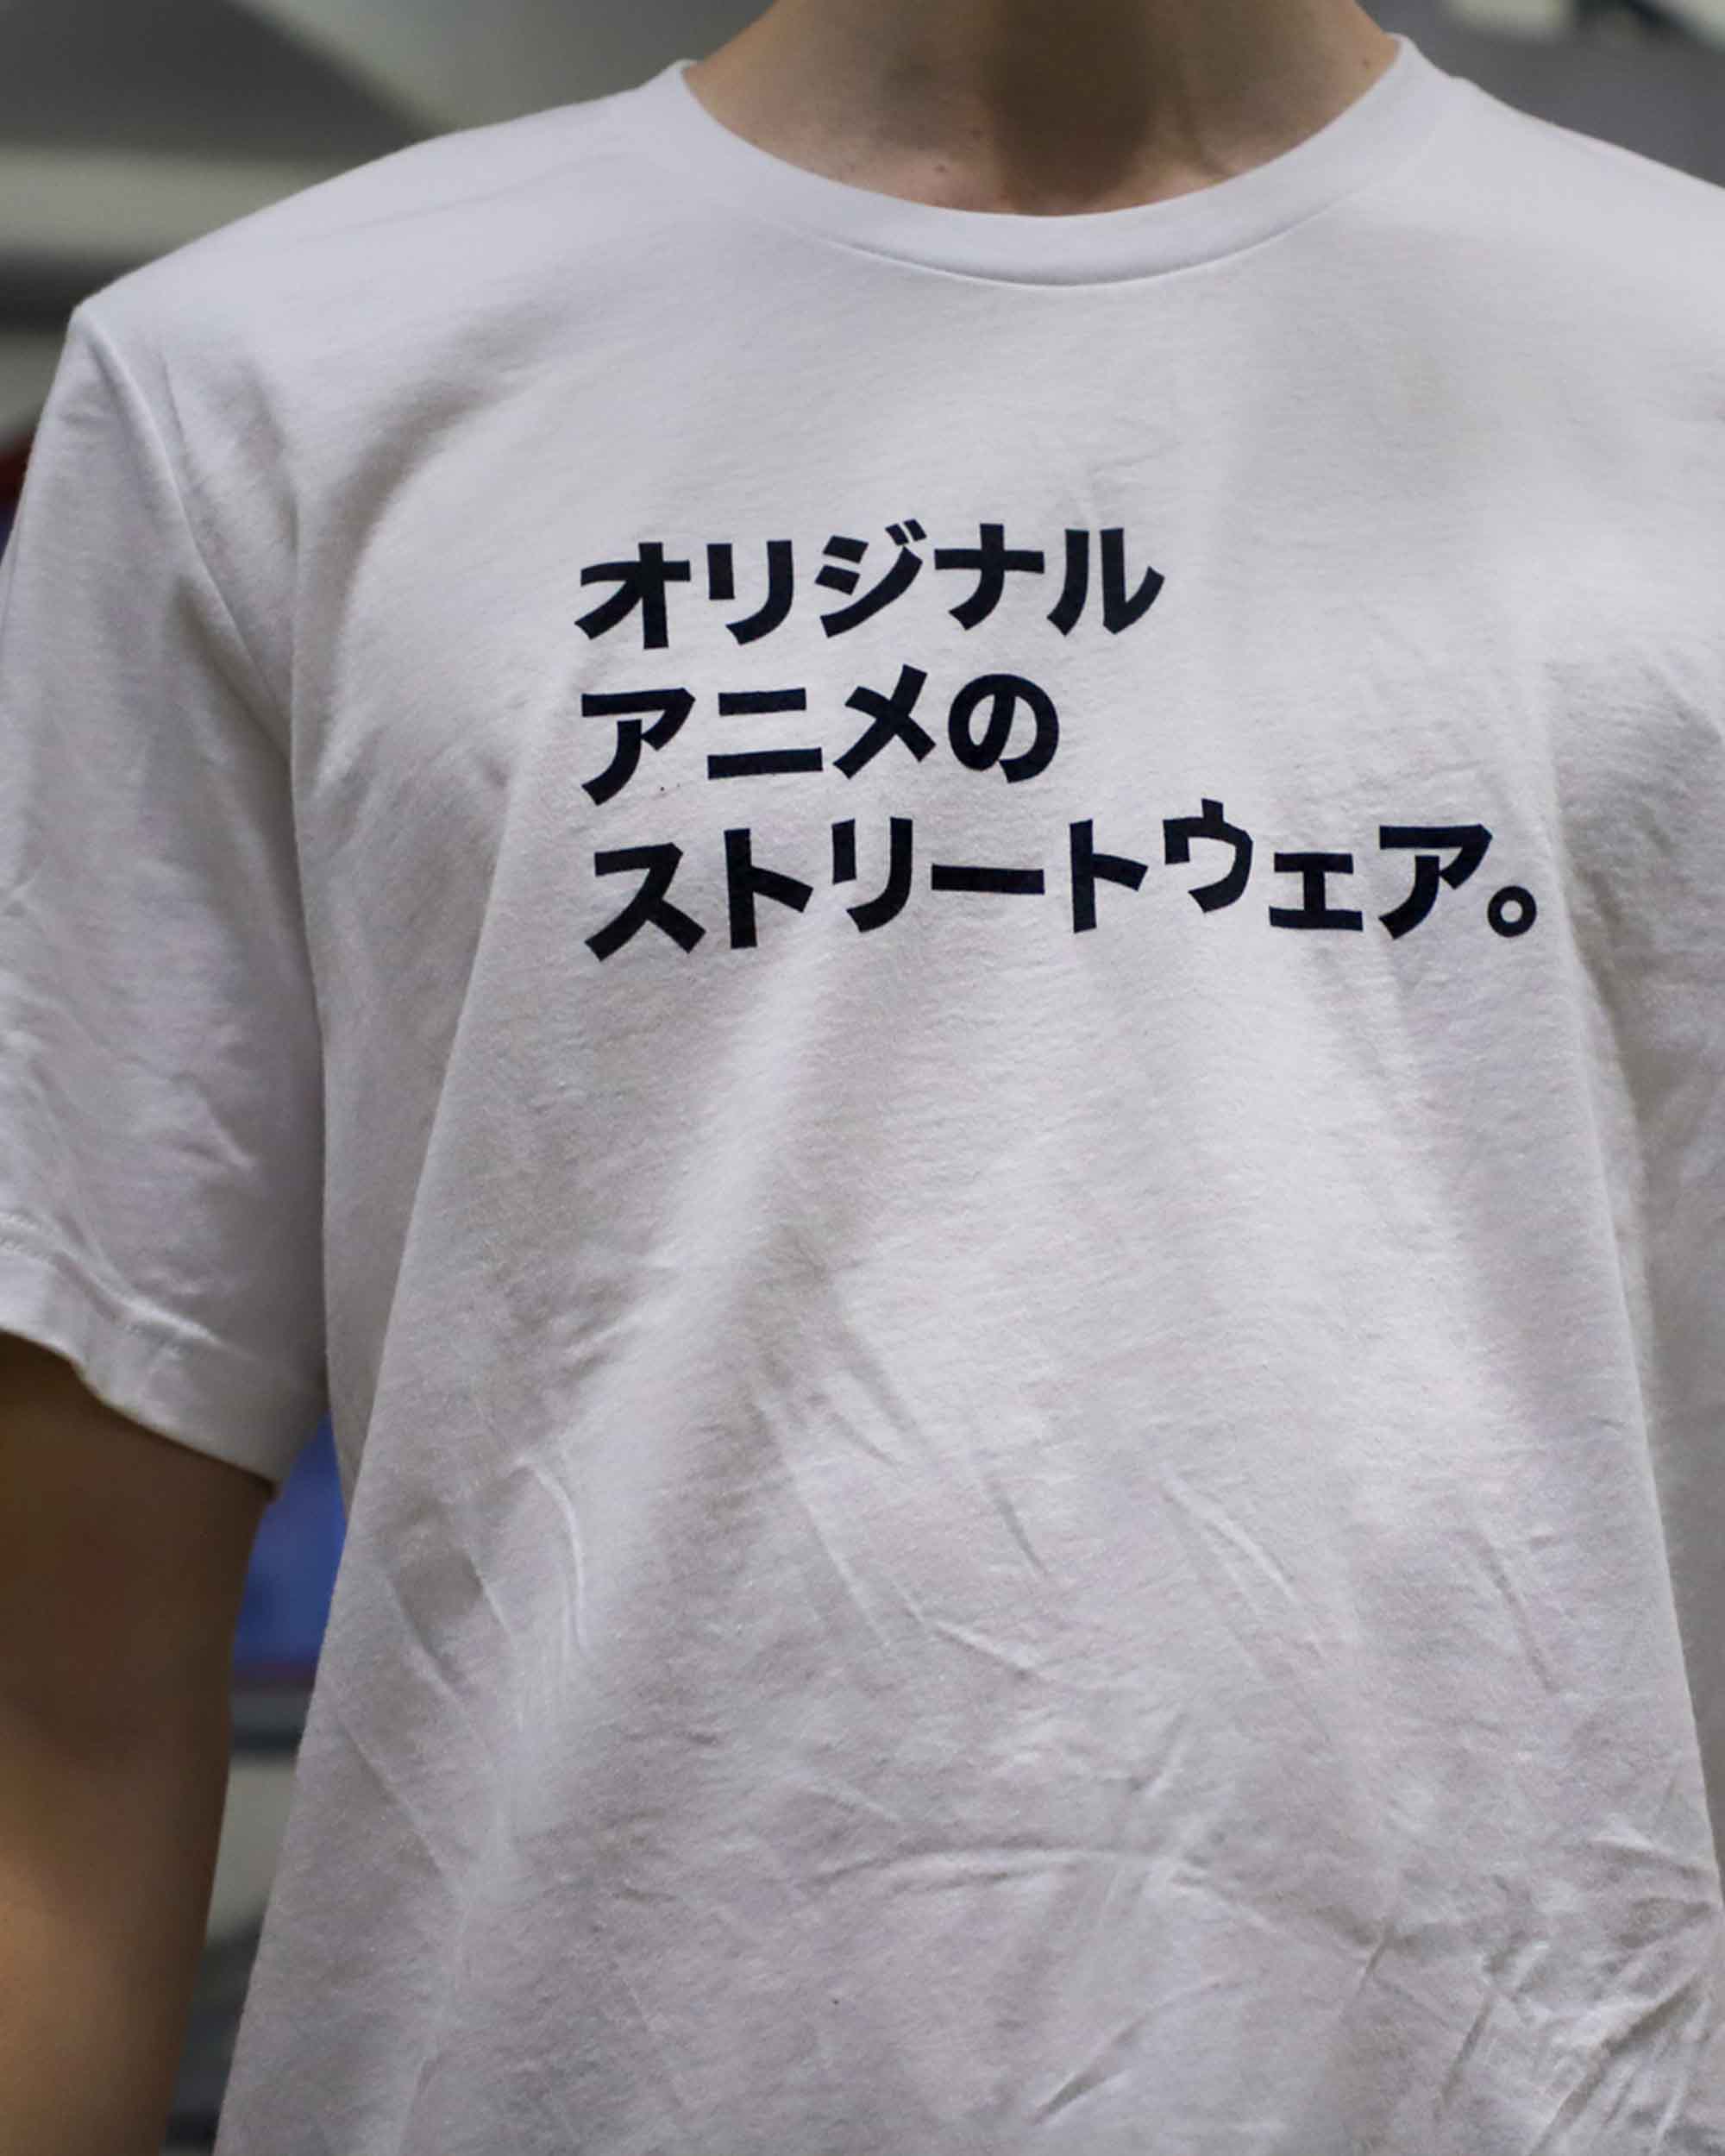 Imouri 2 Year Rebrandiversary Anime T Shirt